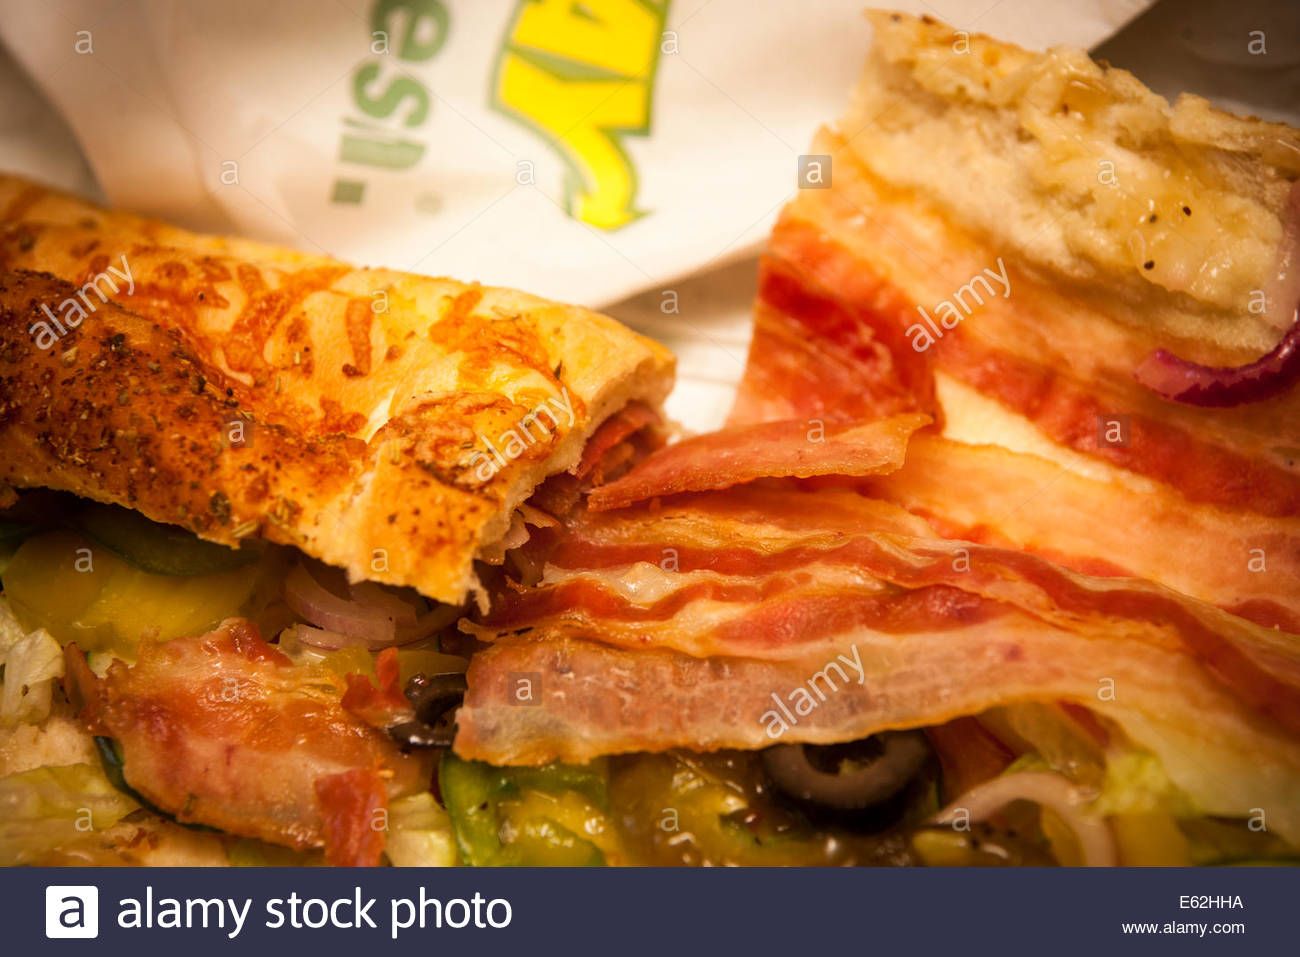 Subway - Baccon-Lettuce-Tomato